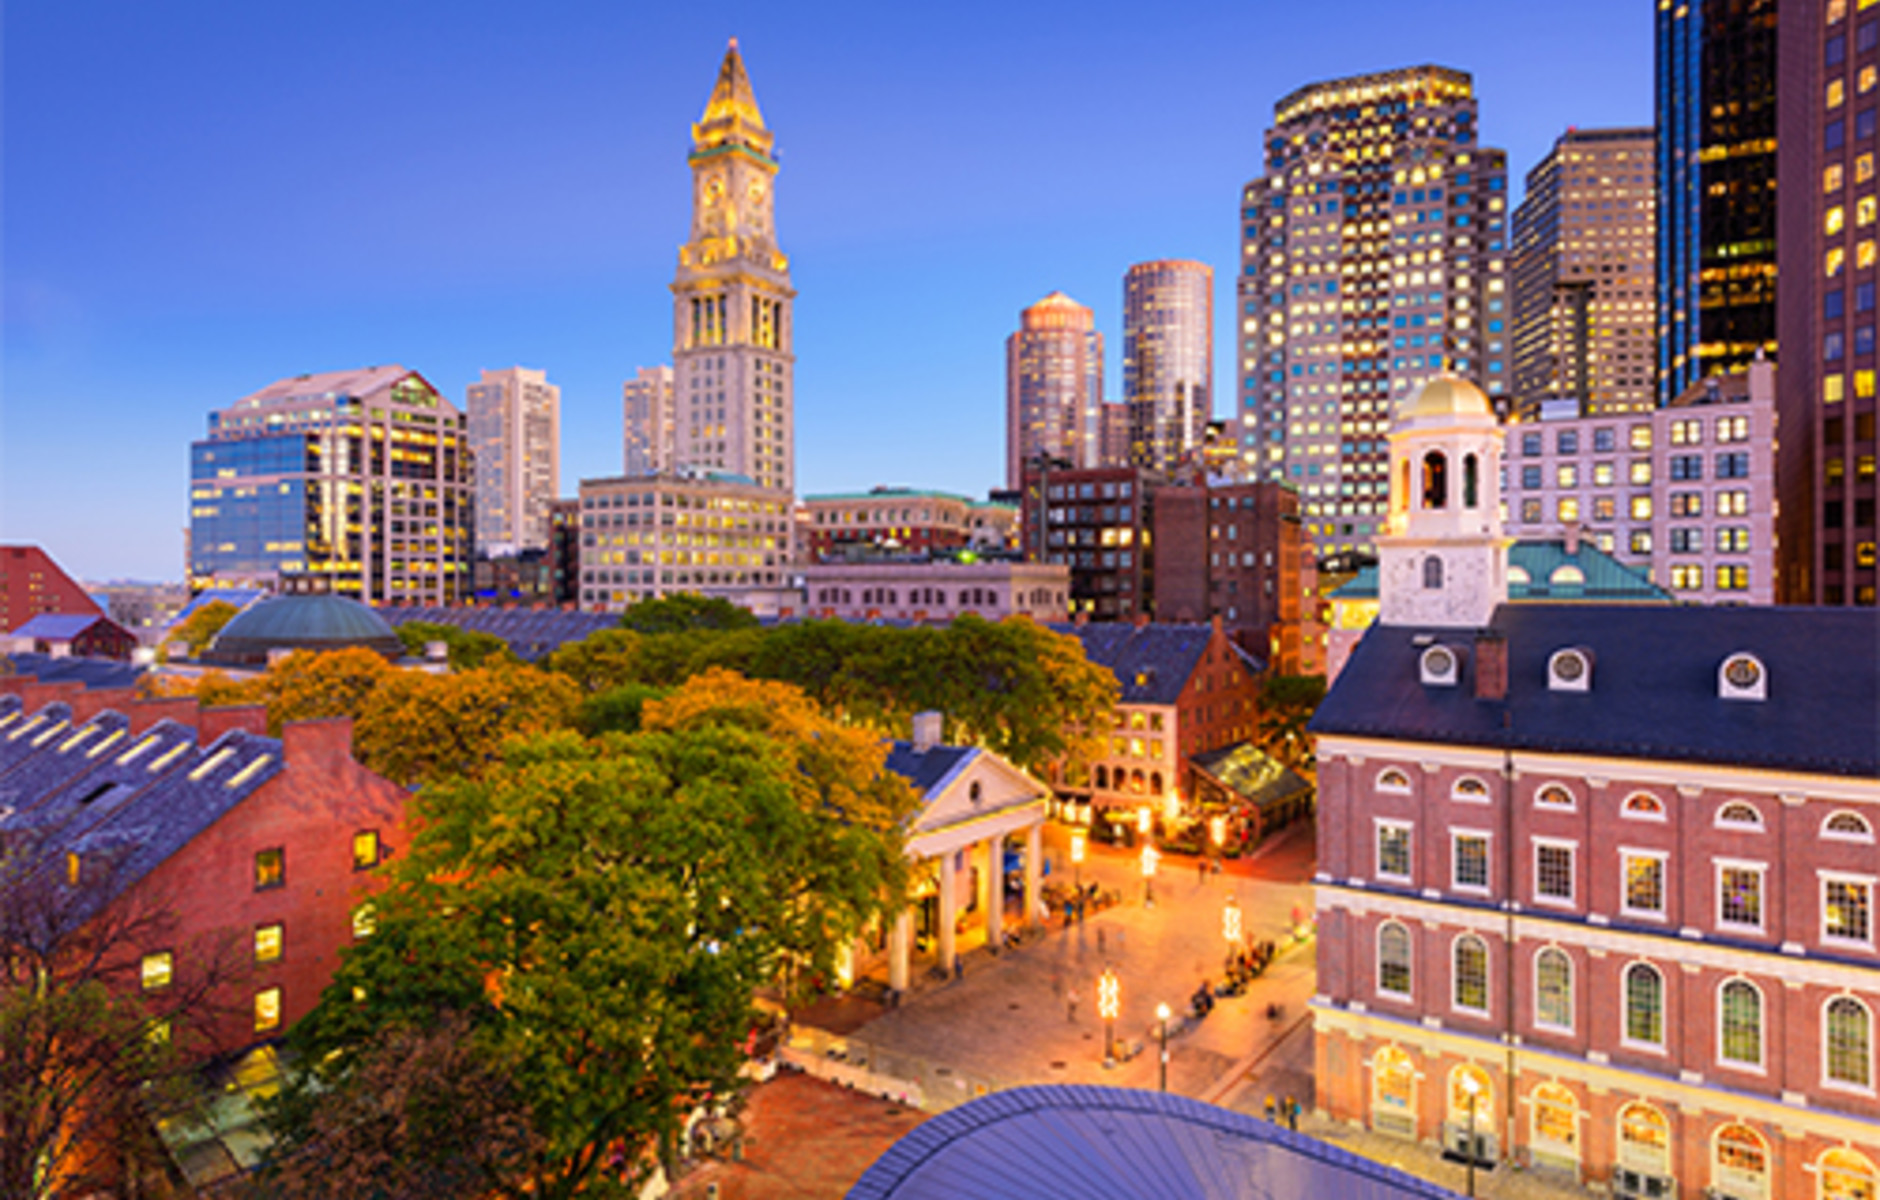 Boston, Massachusetts Skyline